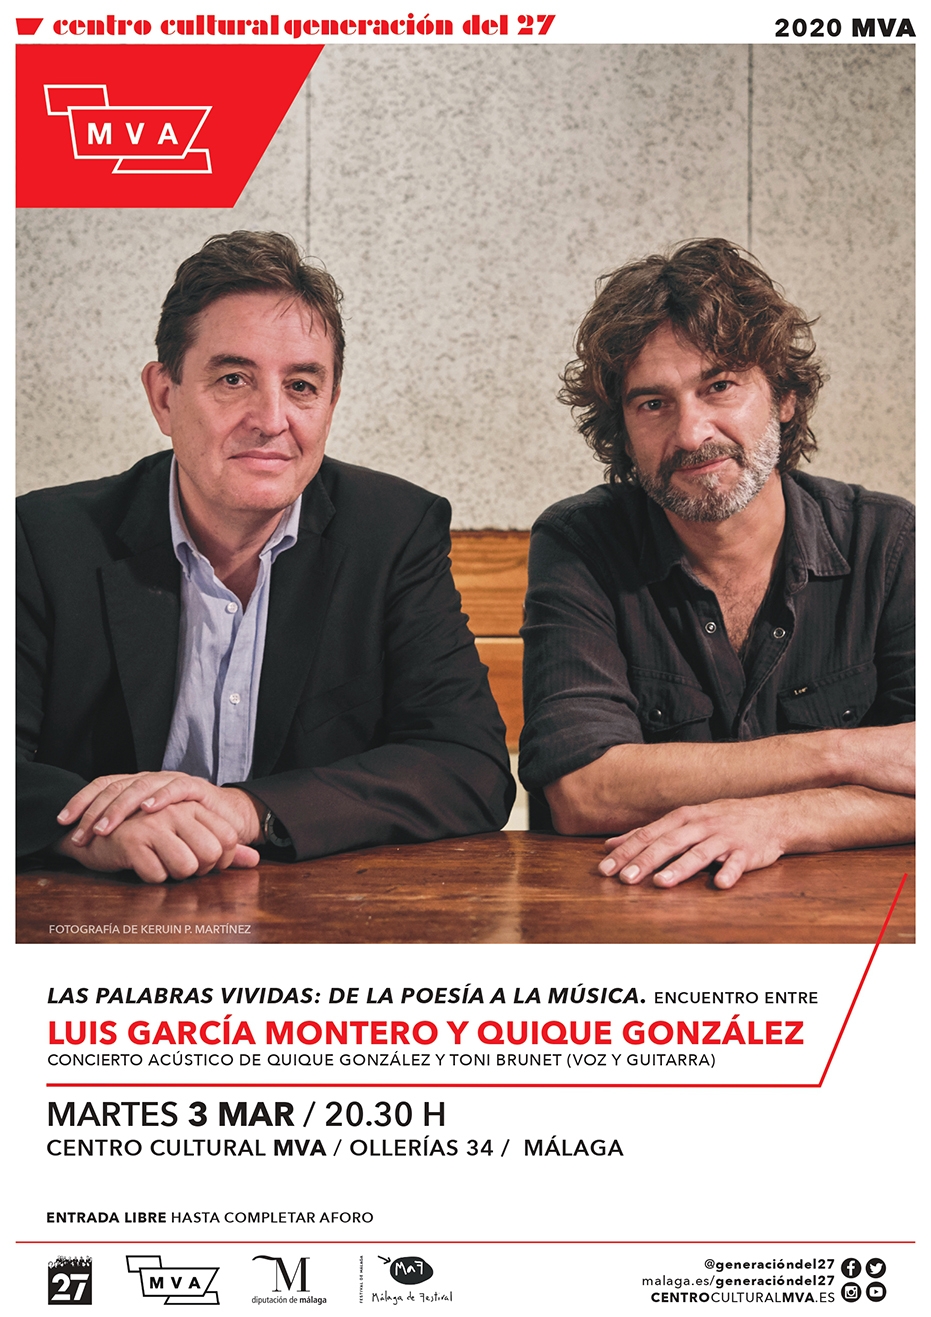 Palabras vividas: de la poesía a la música. Encuentro entre Luis García Montero y Quique González. Concierto acústico de Quique González